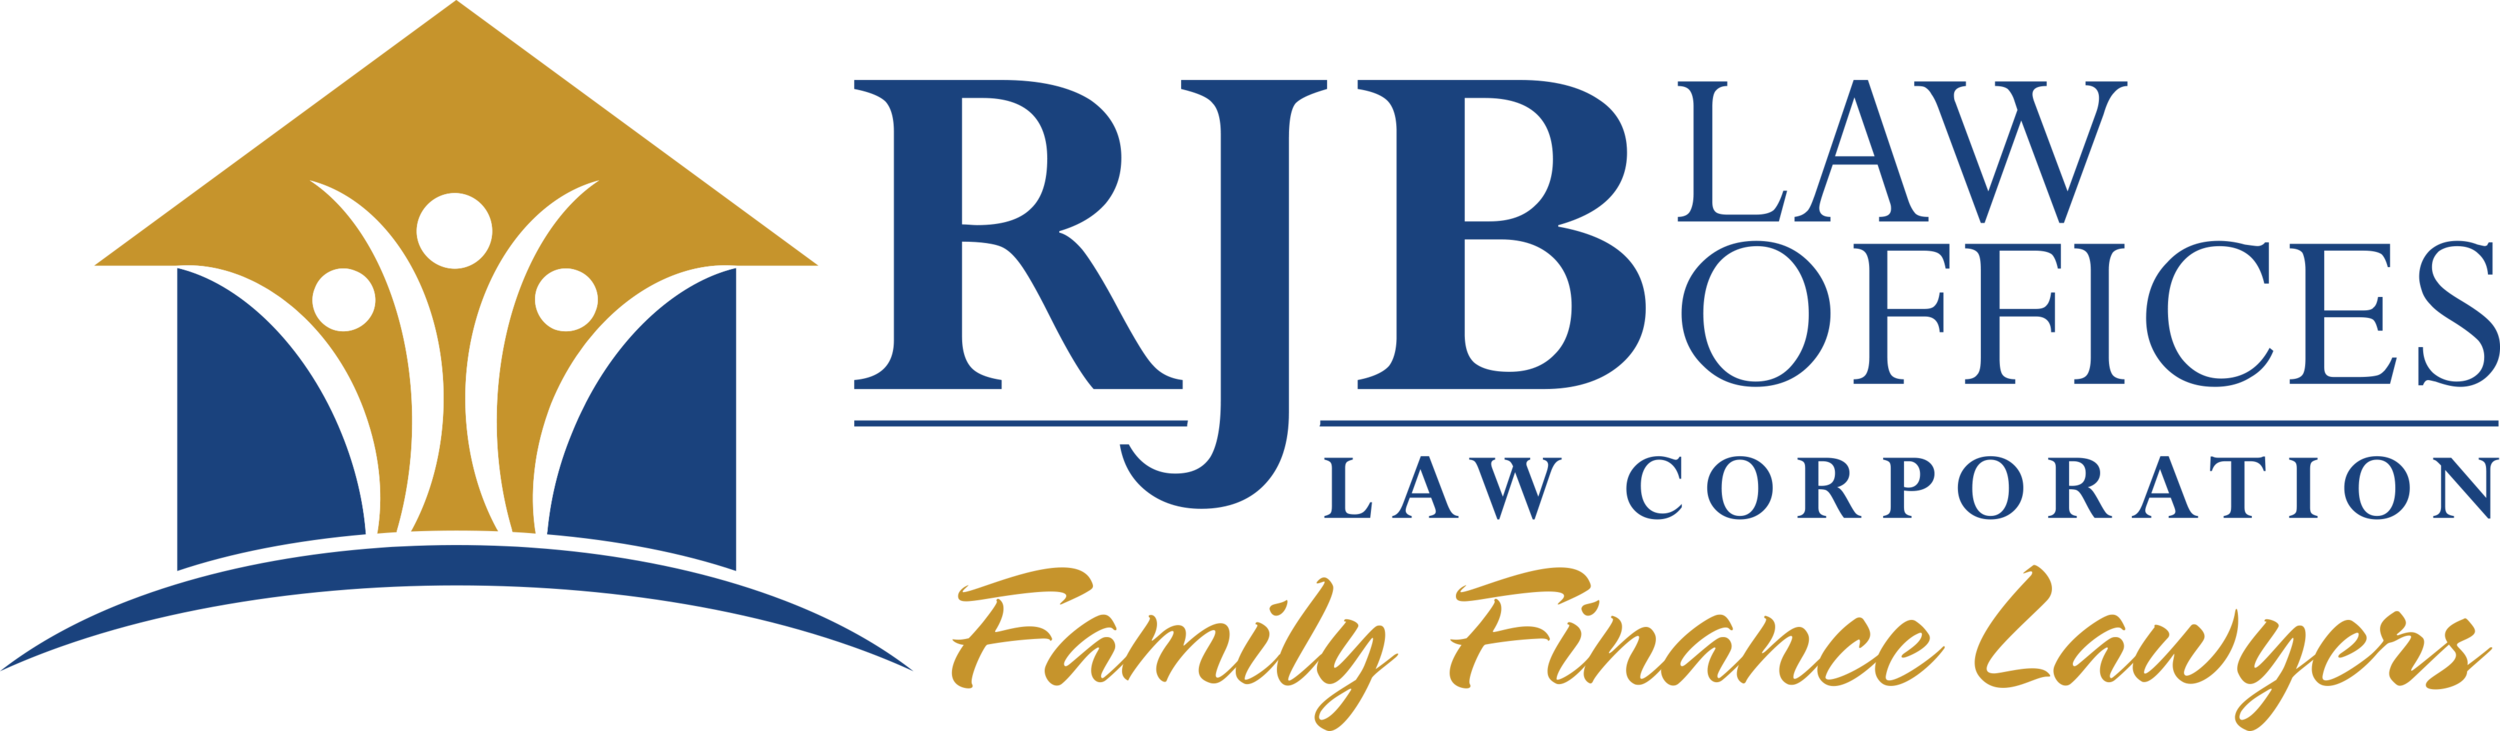 RJB Law Offices - Debt Mediator